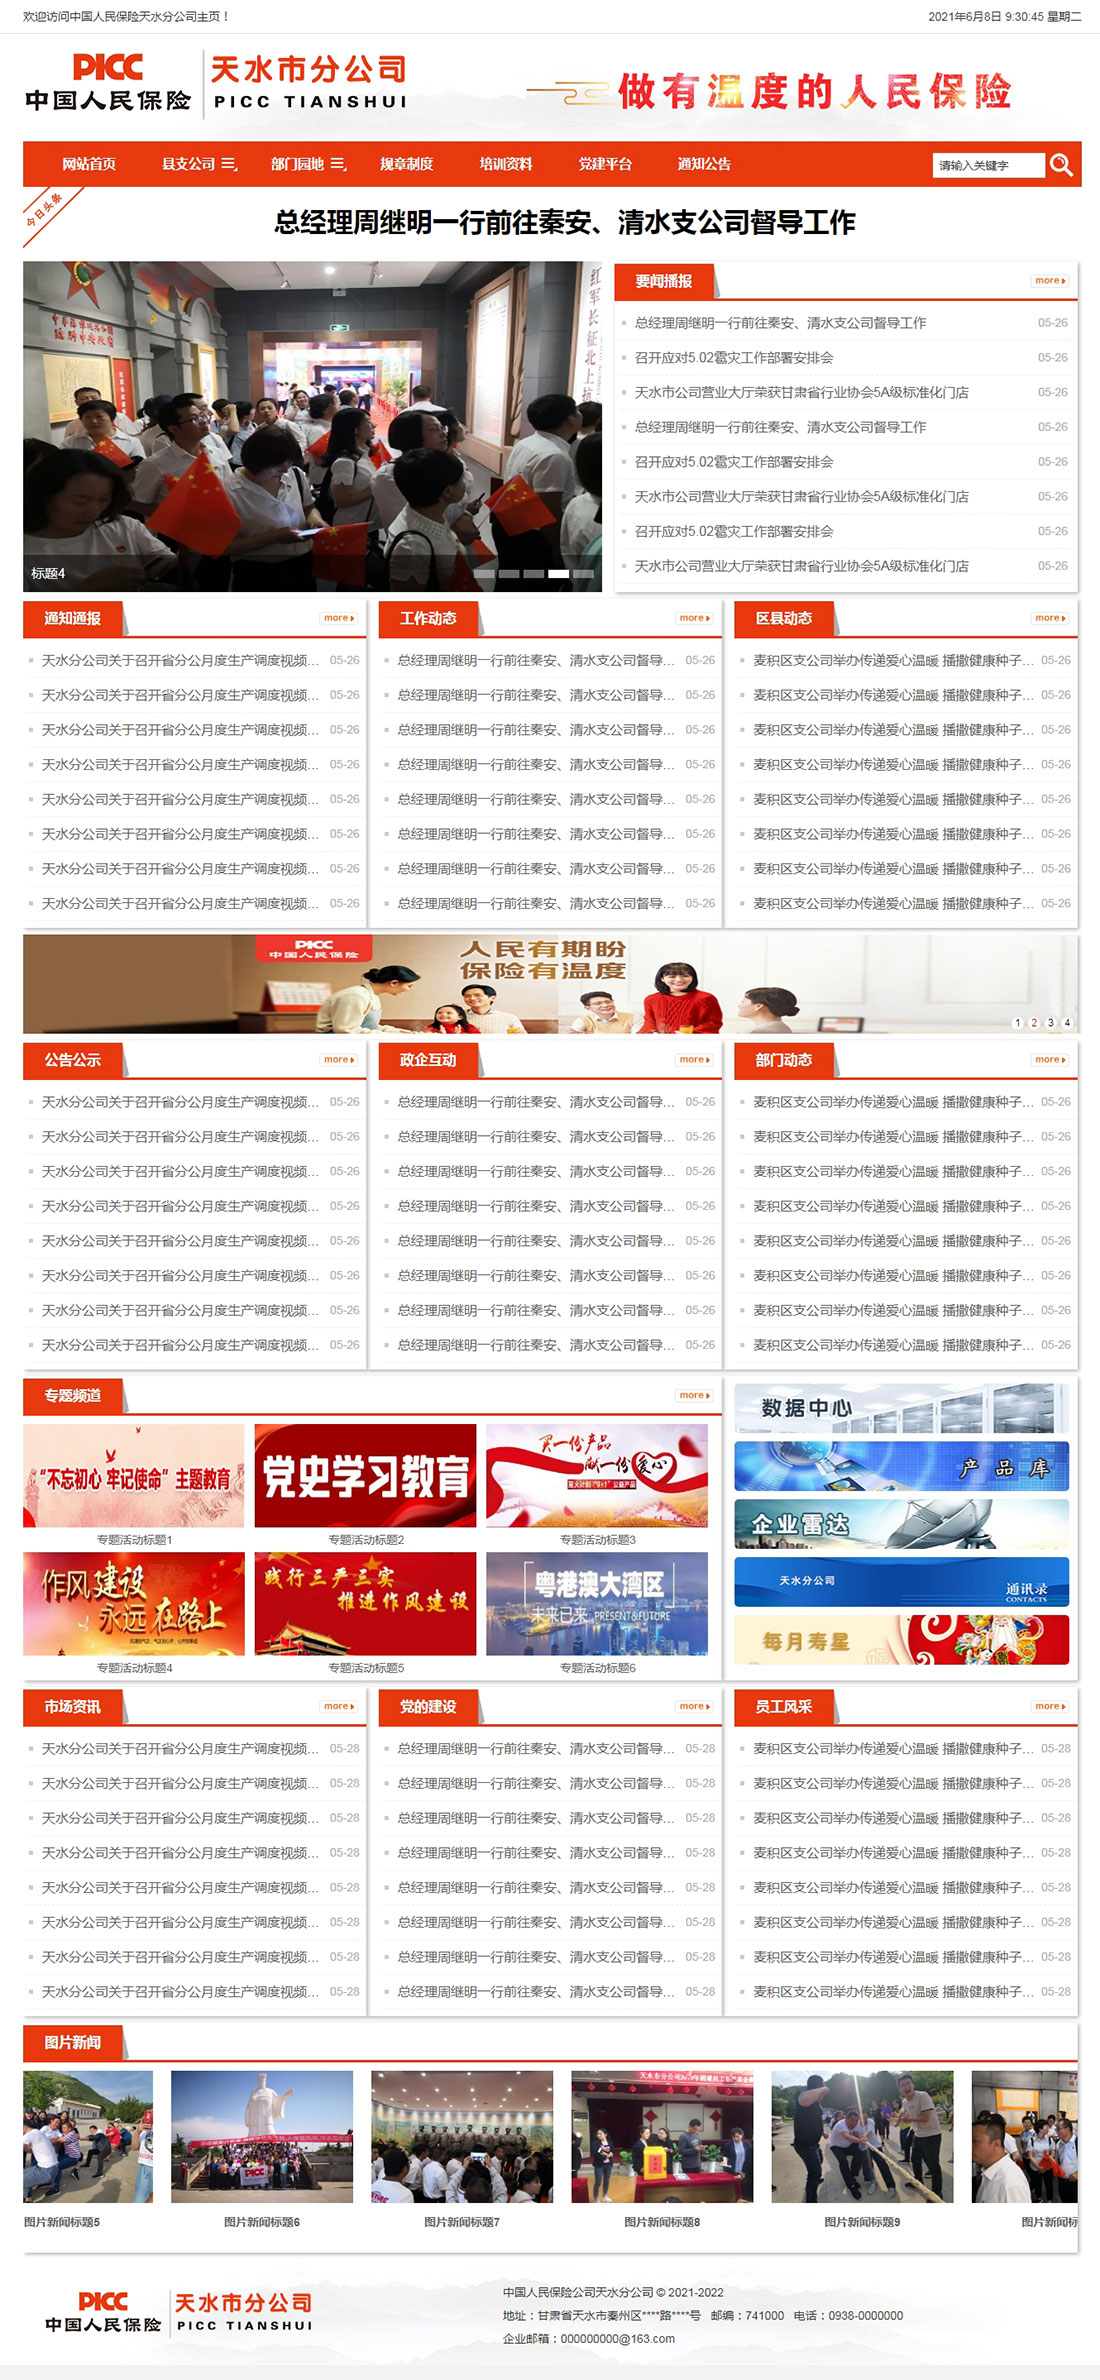 中国人民保险天水分公司内网门户网站主页